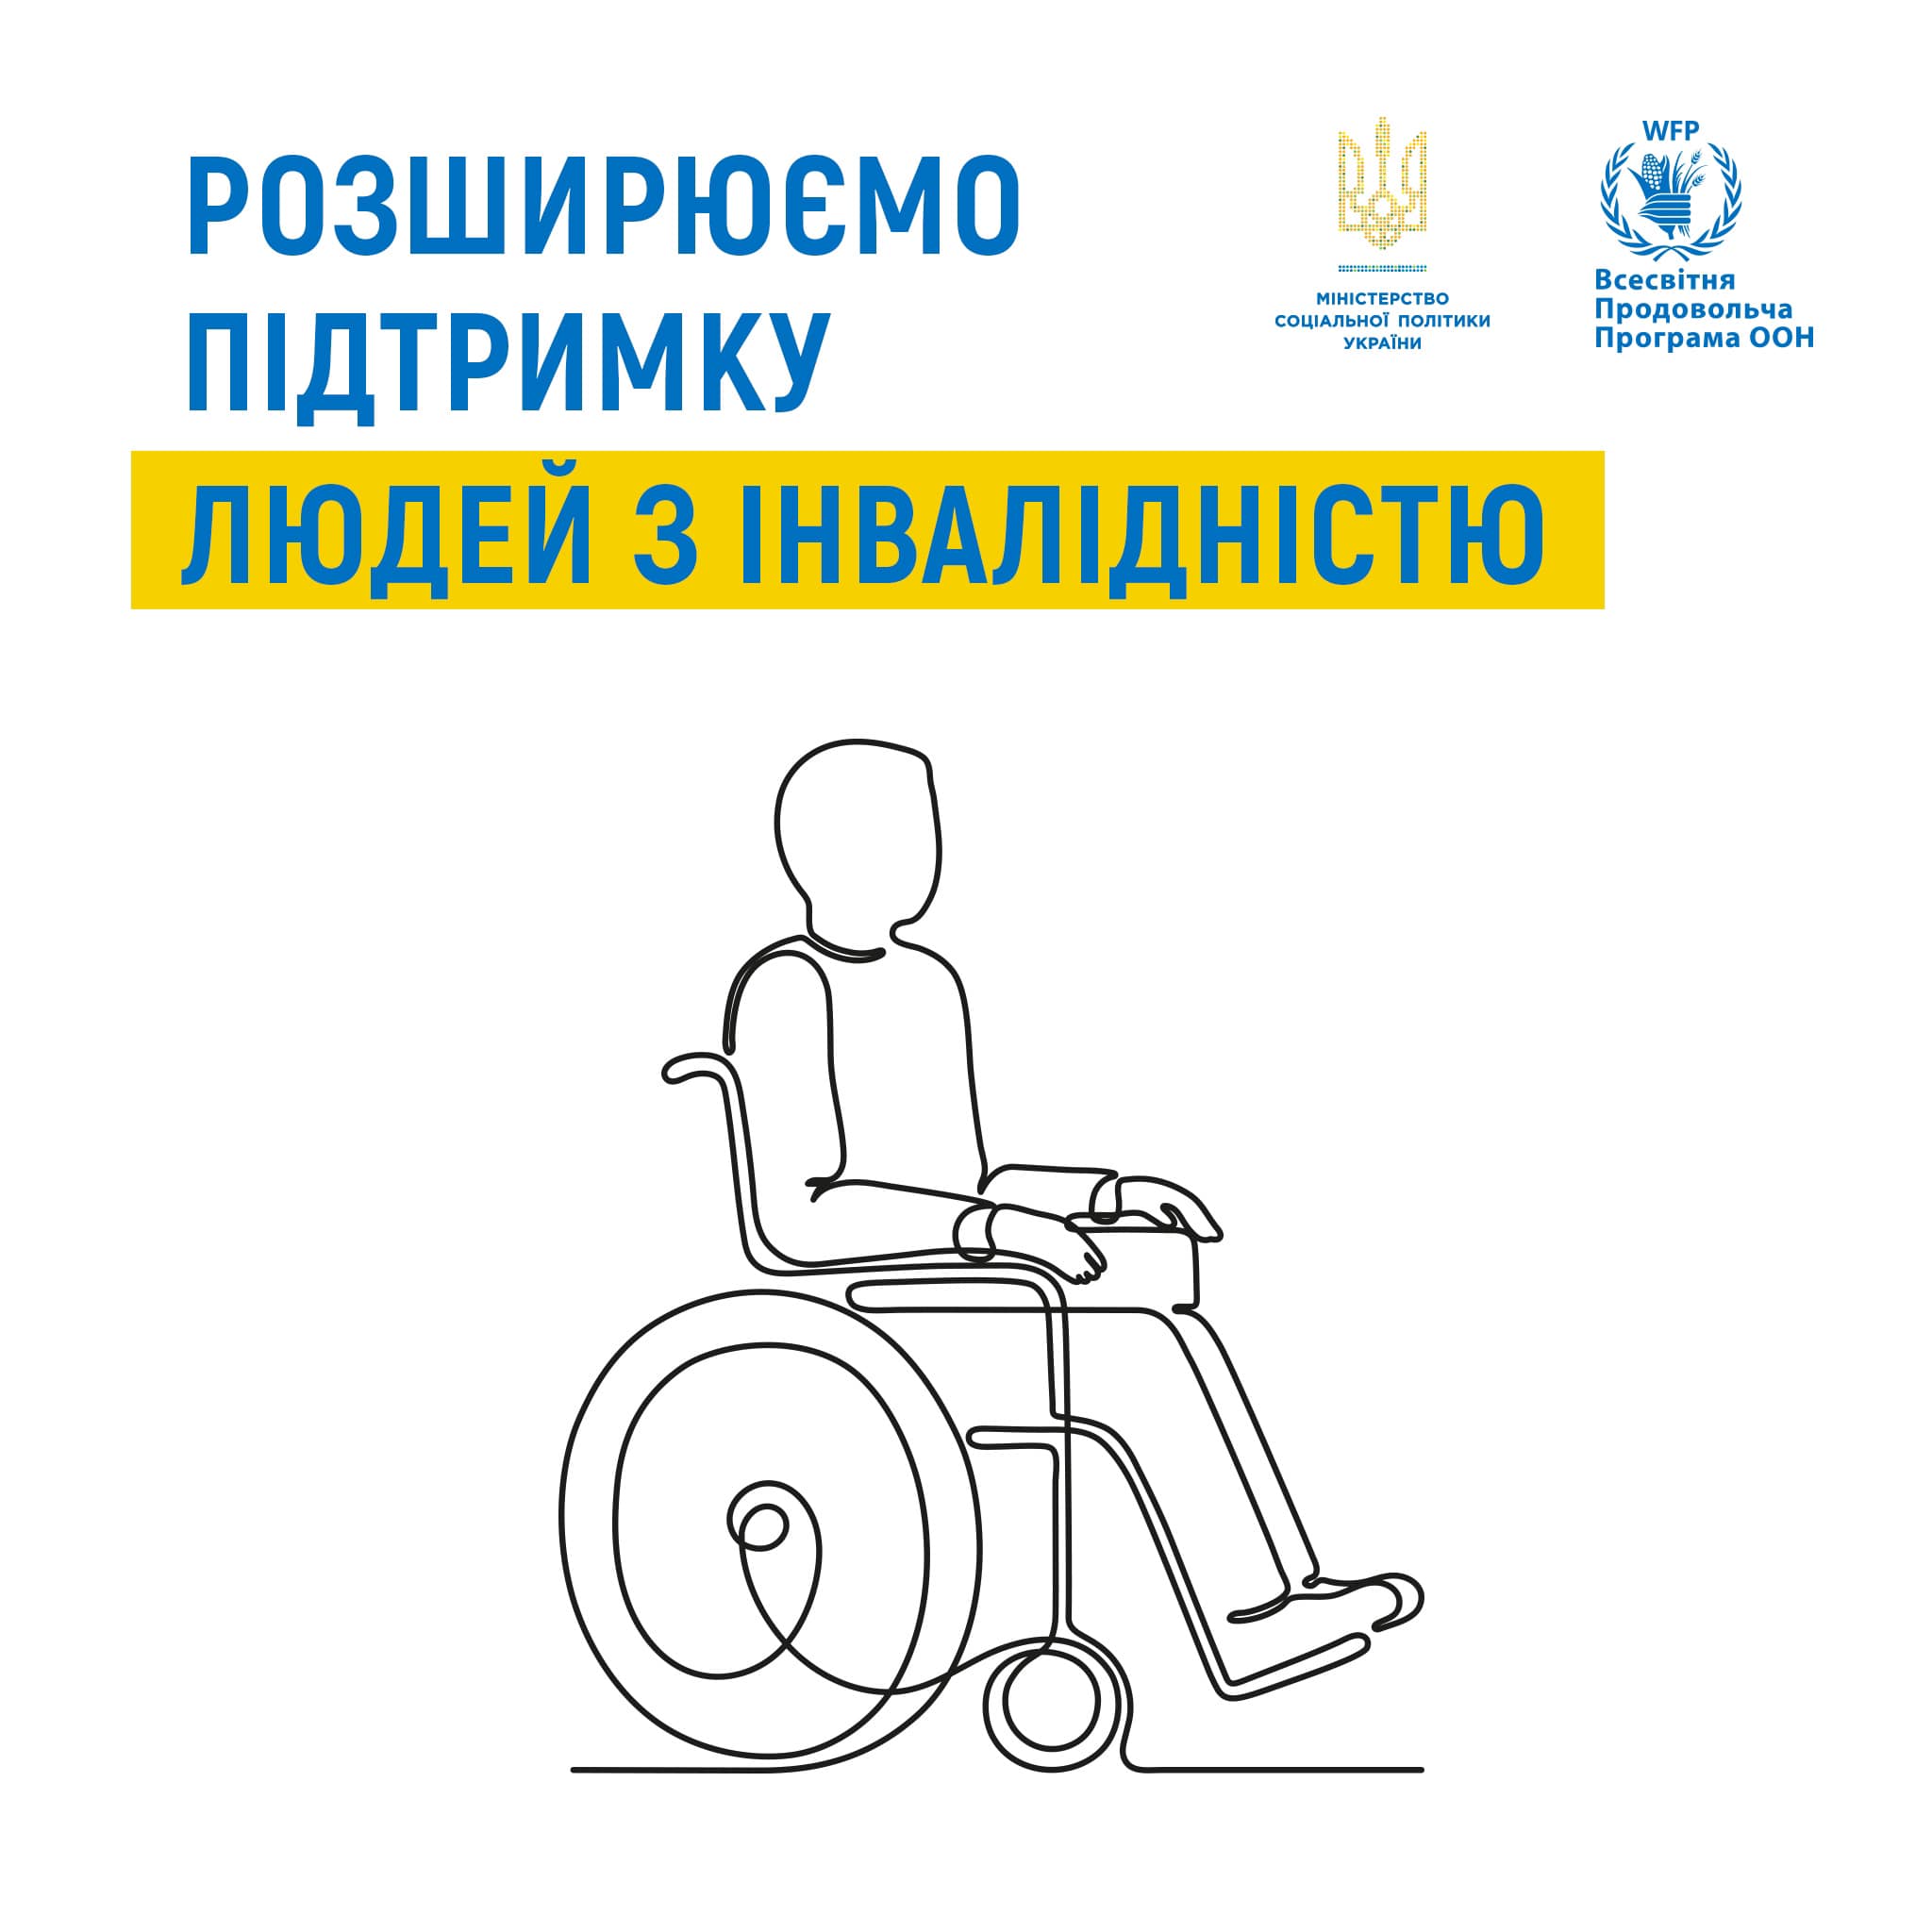 Люди з інвалідністю з дитинства та діти з інвалідністю зможуть отримати додаткові виплати від Всесвітньої продовольчої програми ООН (ВПП ООН)